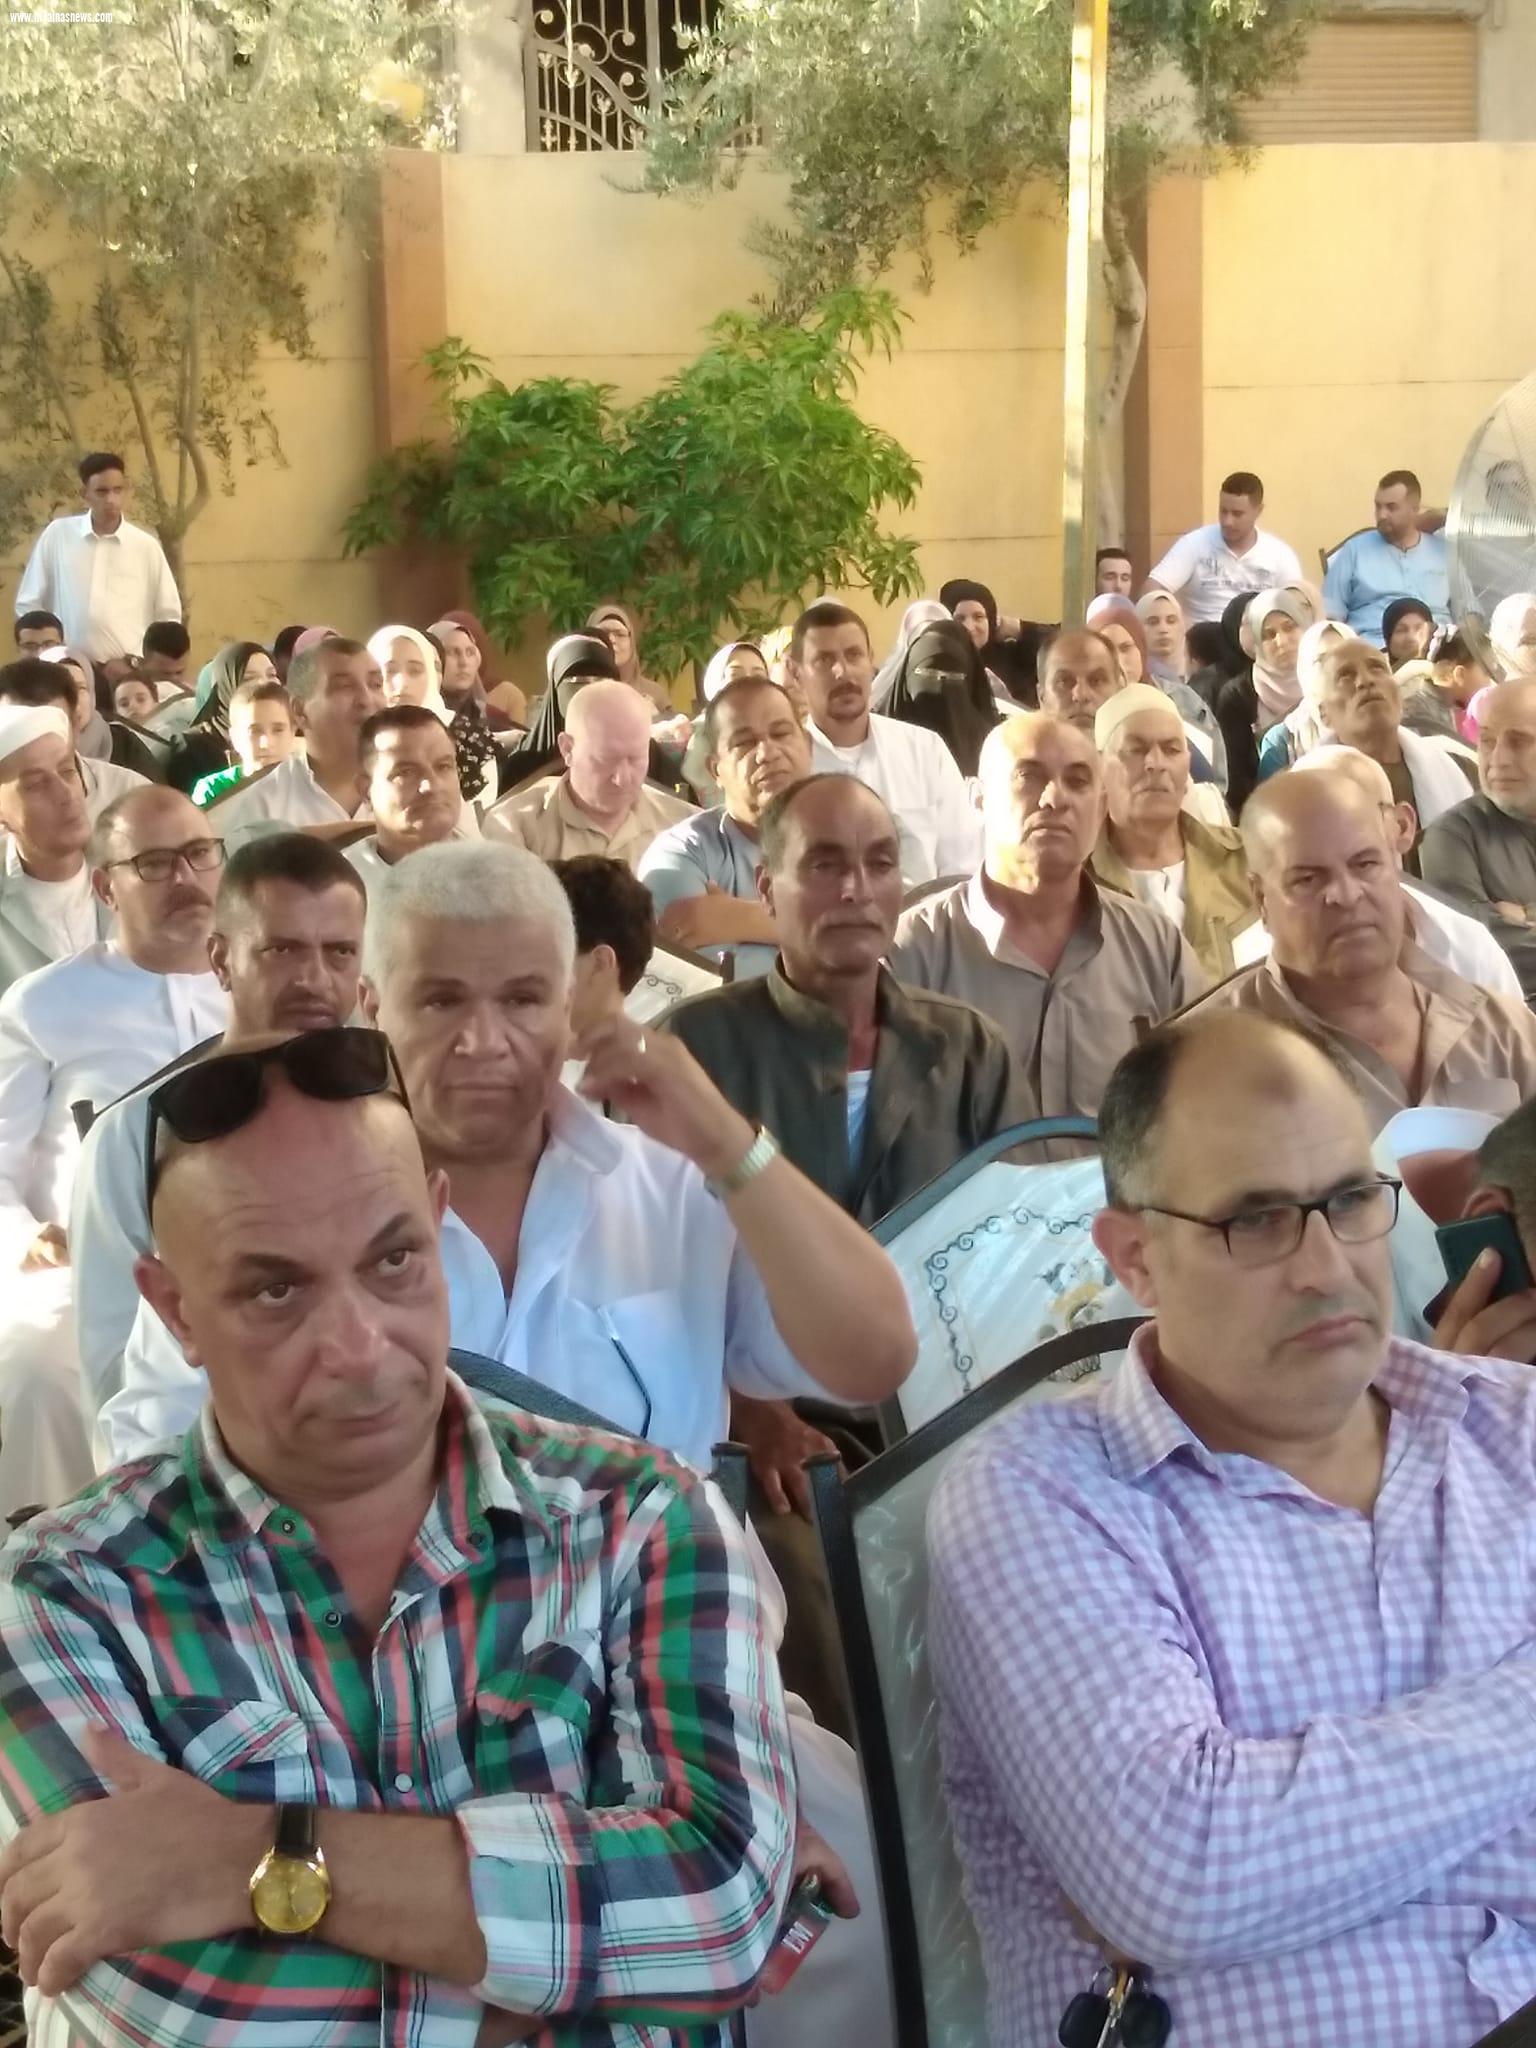 تظاهرة شعبية من أهالى مركز الحامول للمطالبة بترشح اللواء أسعد الزكير لمجلس النواب